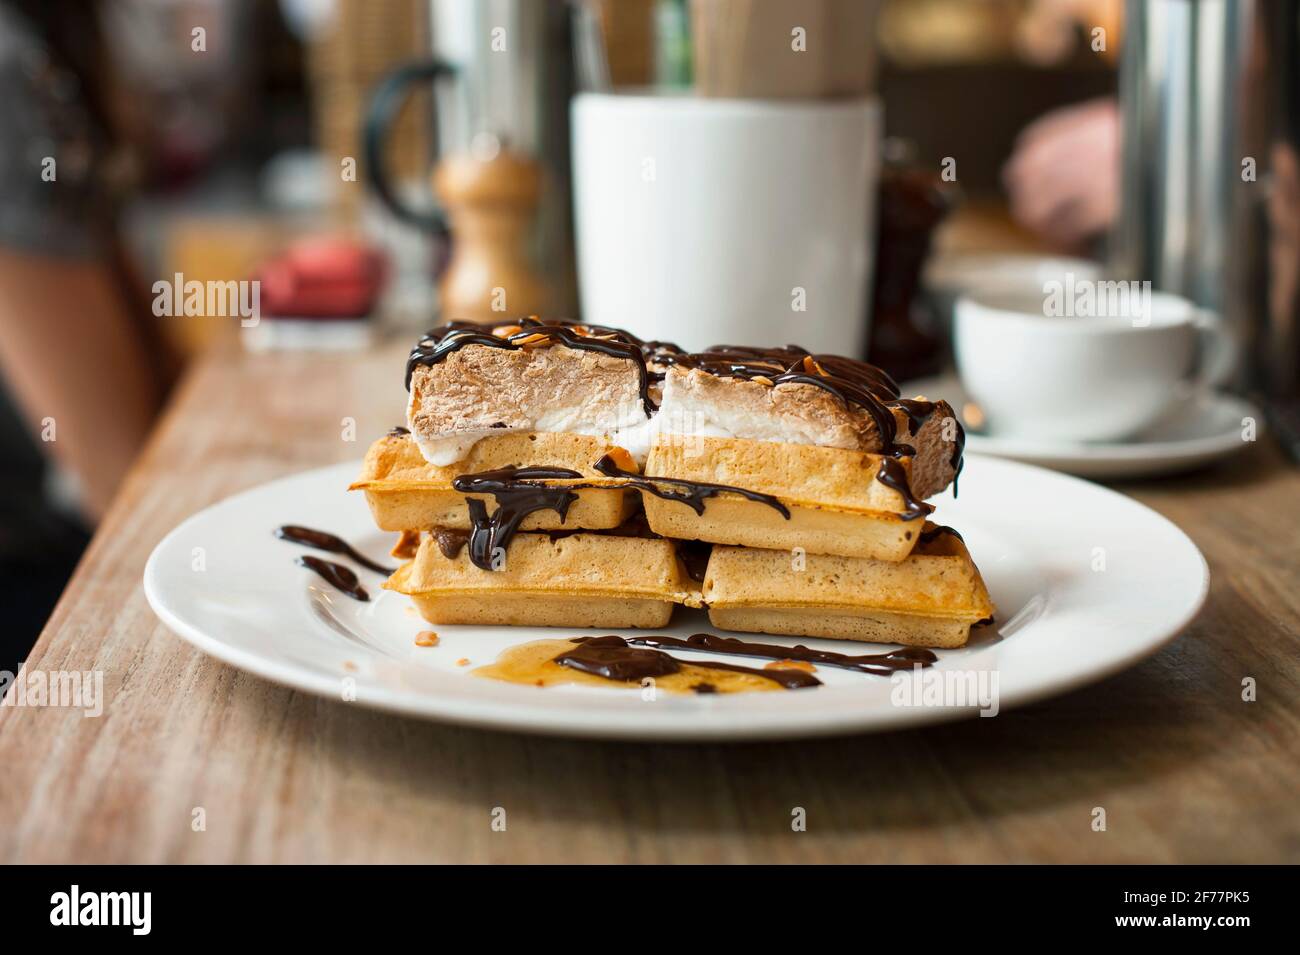 Waffle belga con crema y chocolate servido en una cafetería. Londres, Reino Unido Foto de stock